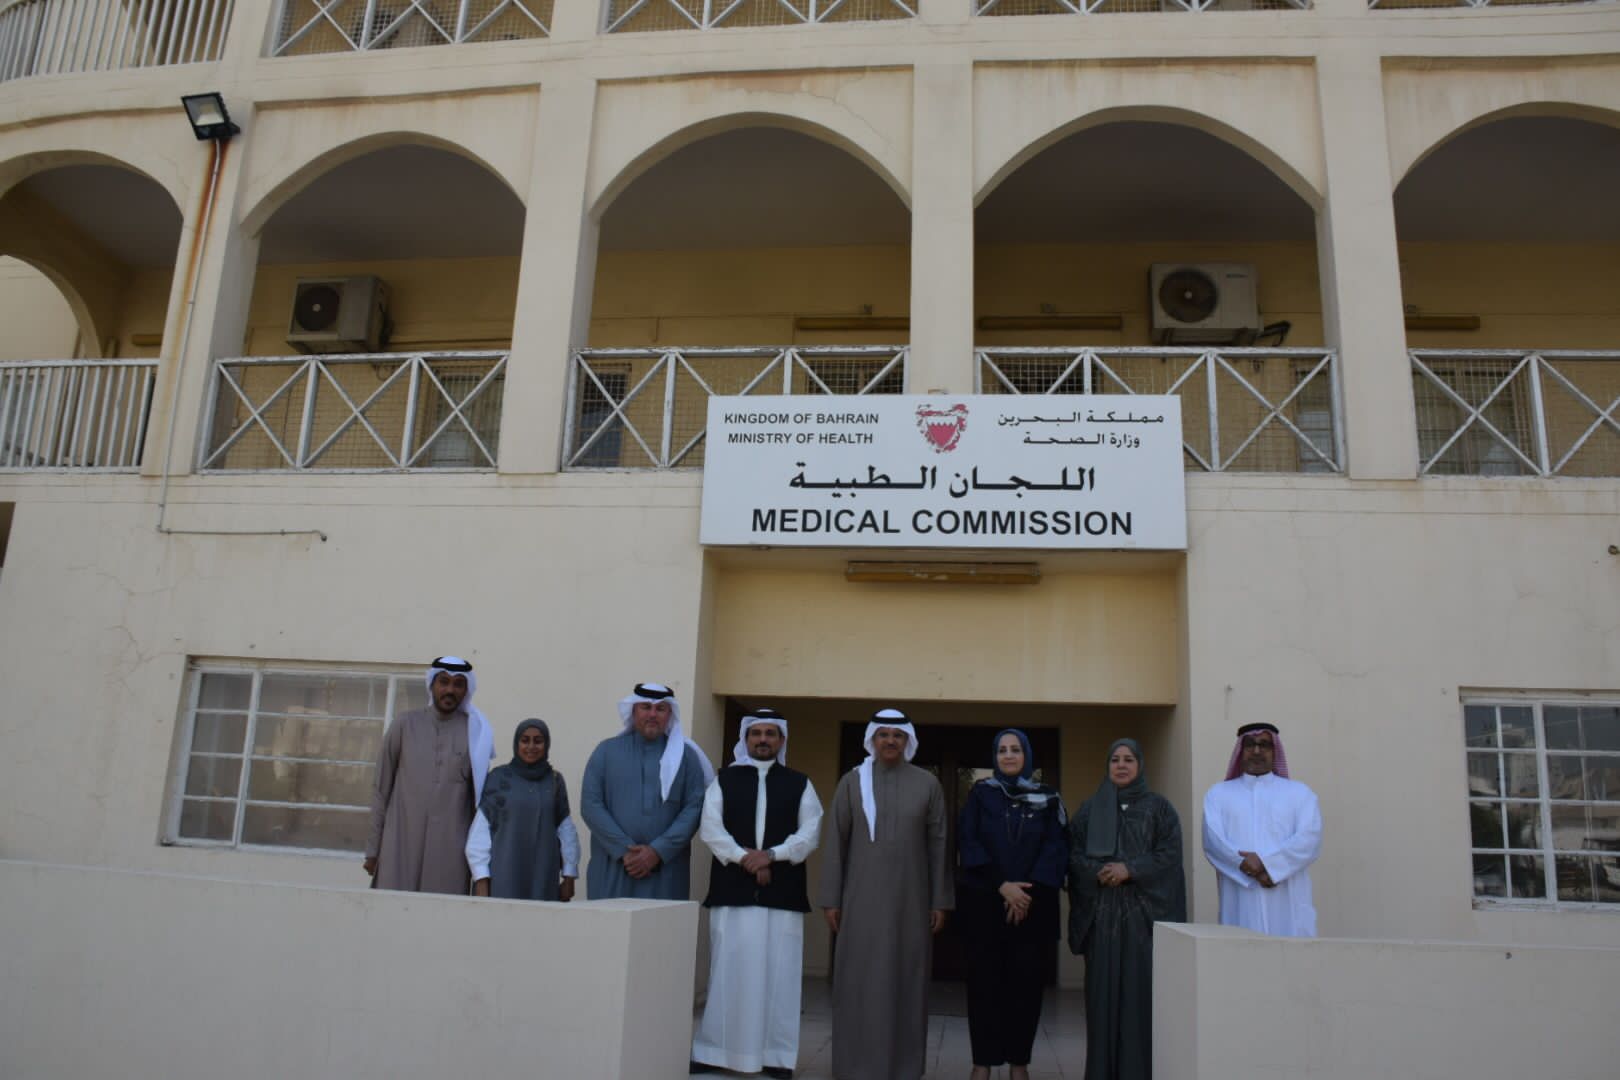 وزيرة الصحة ورئيس هيئة البحرين للثقافة والآثار يقومان بزيارة تفقدية لعدد من المباني والمنشآت والمرافق التاريخية التابعة لوزارة الصحة